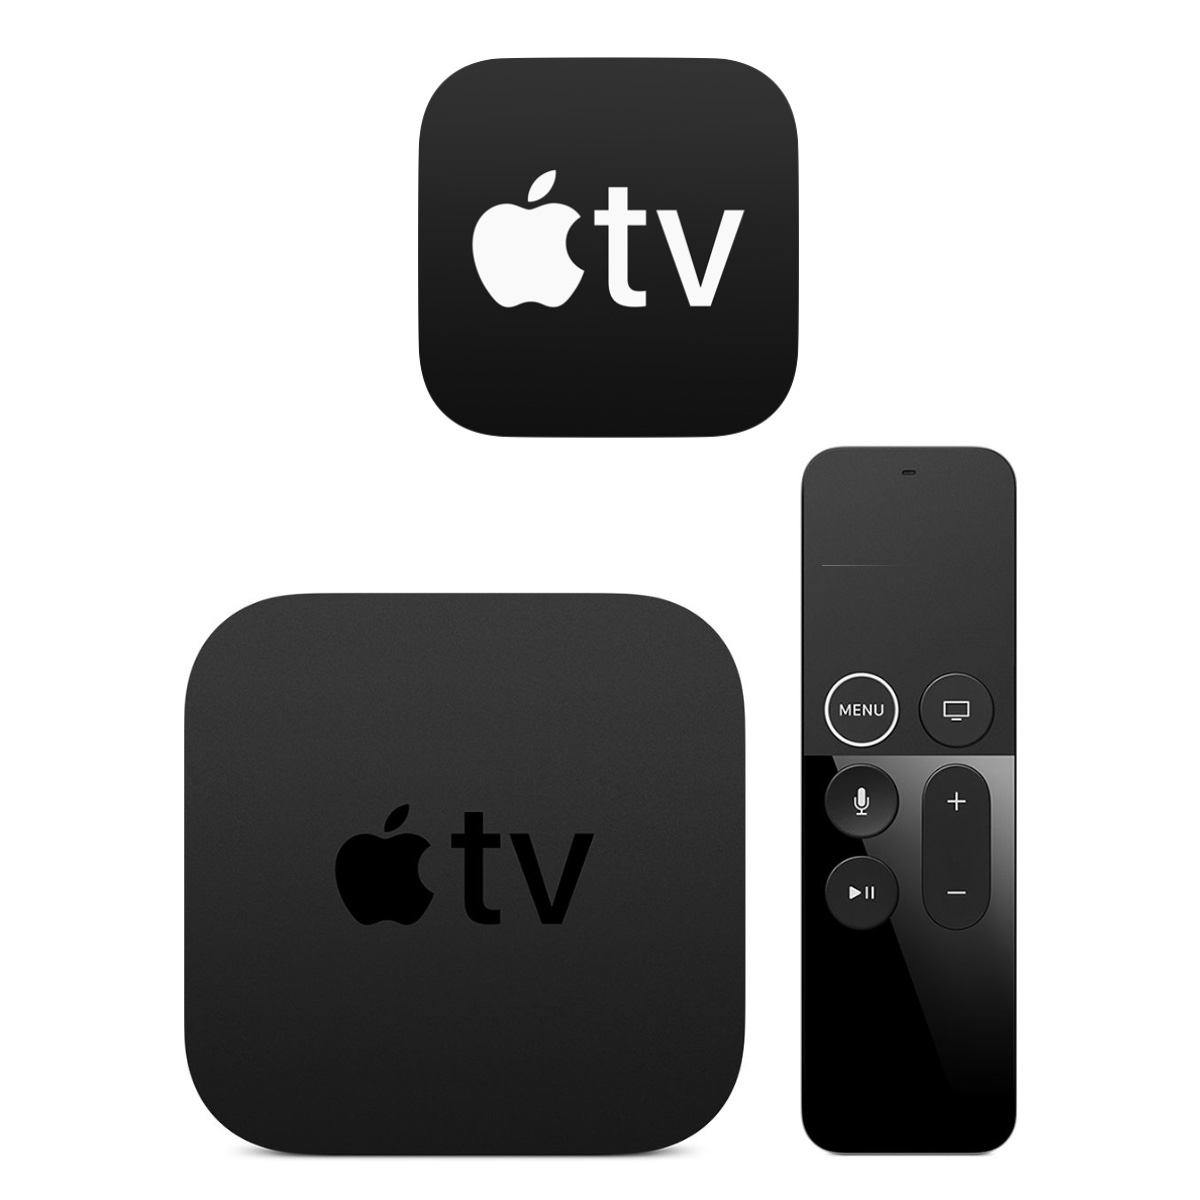 あなたの「Apple TV」は何世代？歴代モデルの違いと見分け方を解説 